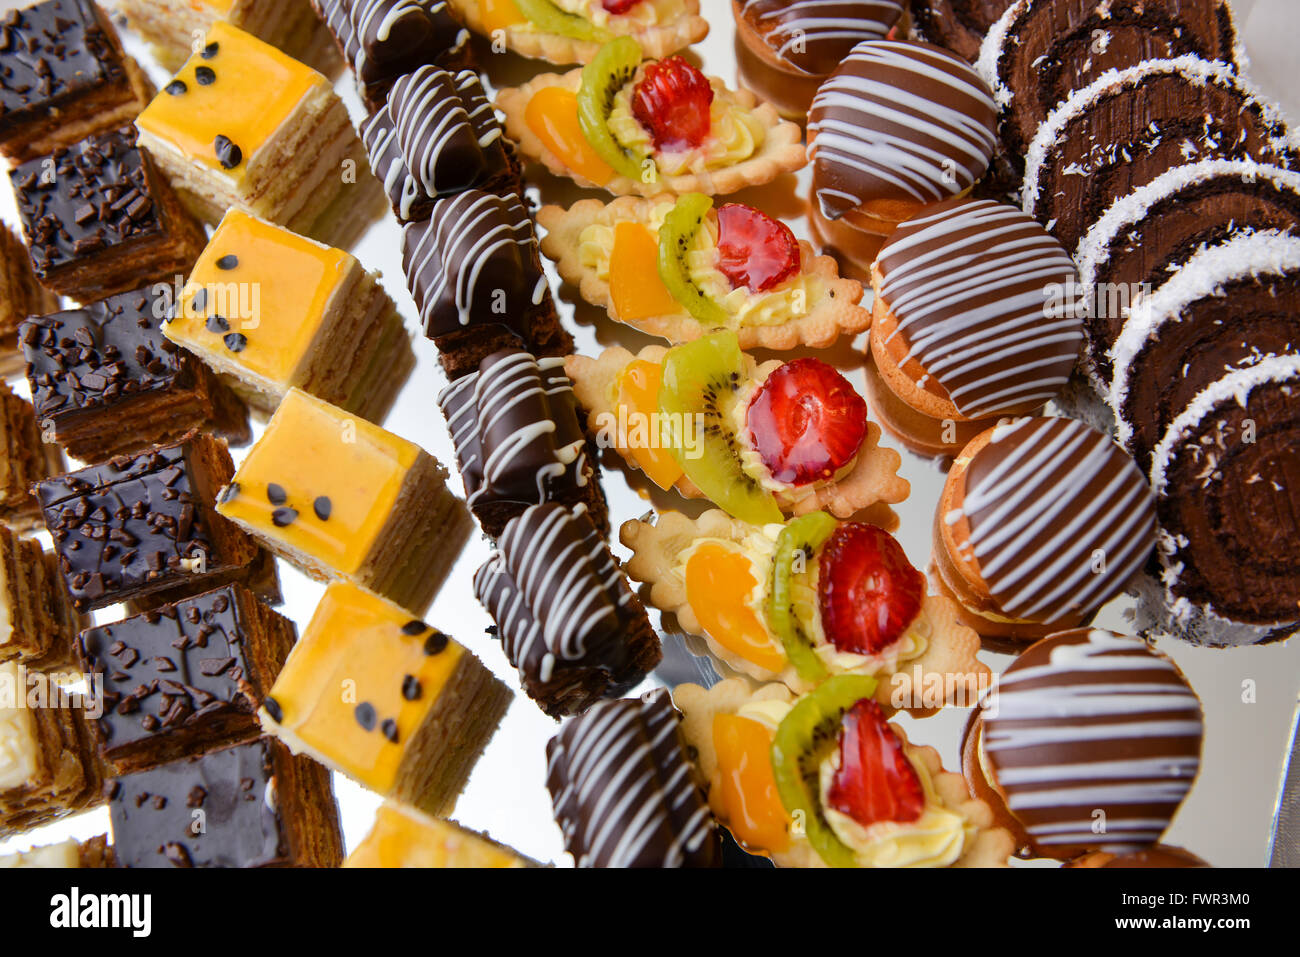 Diversi tipi di torte al cioccolato, di vaniglia e di frutta Foto Stock